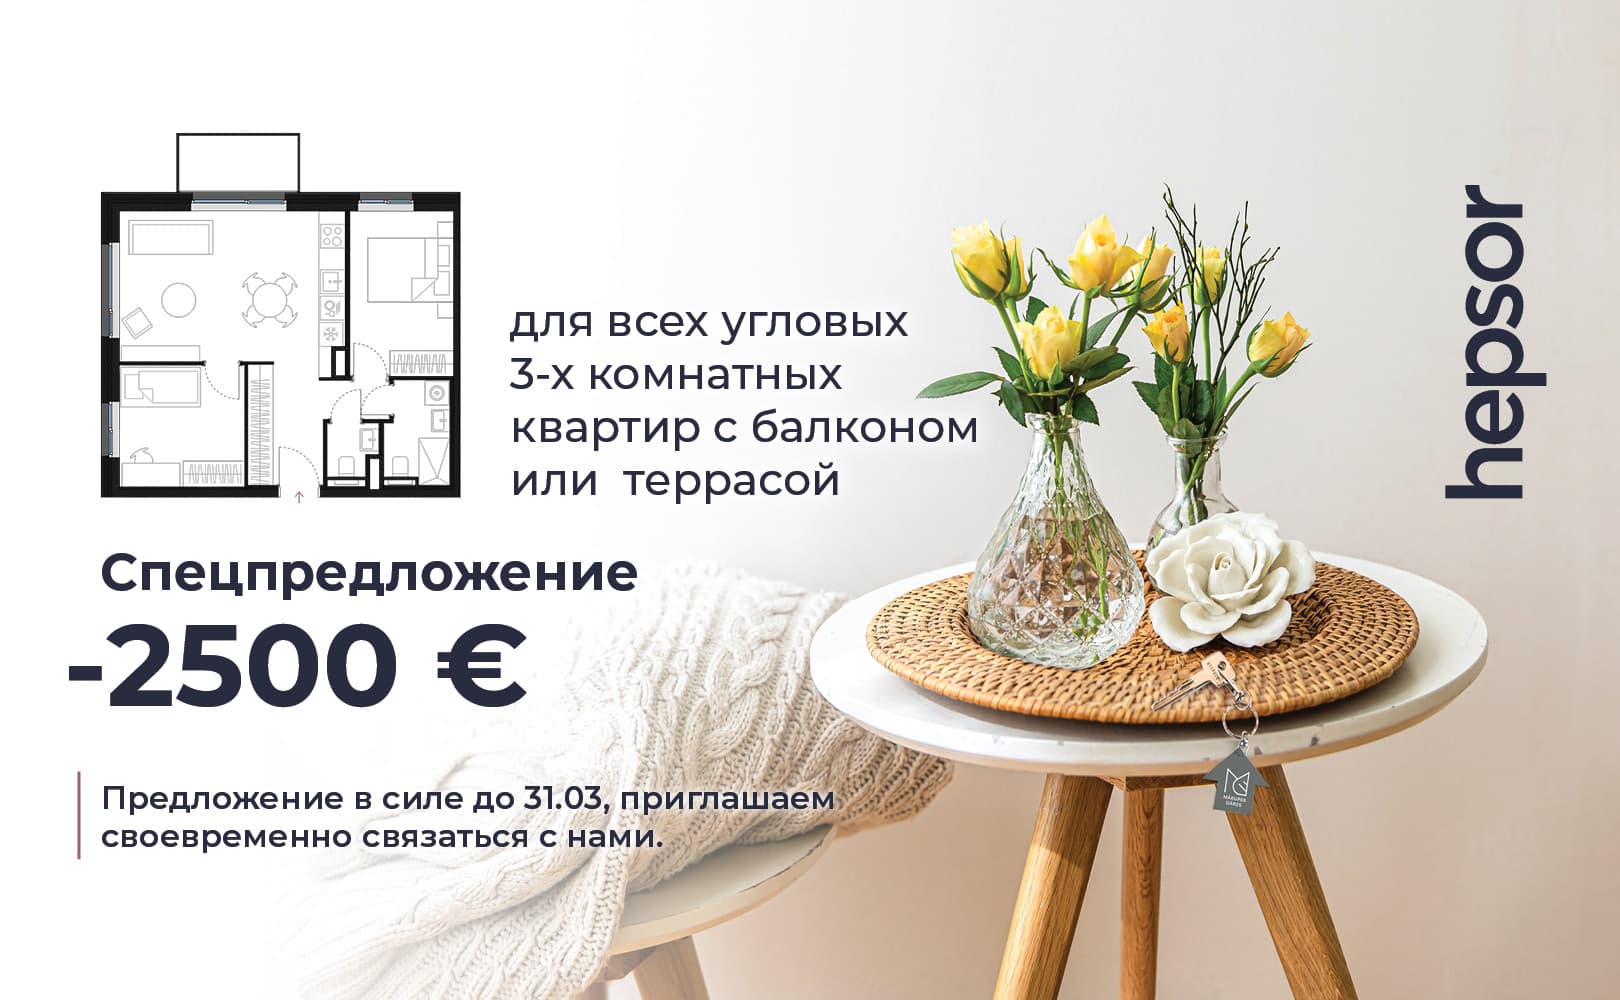 для всех  угловых  3-х комнатных  квартир  c балконом - 2500 EUR